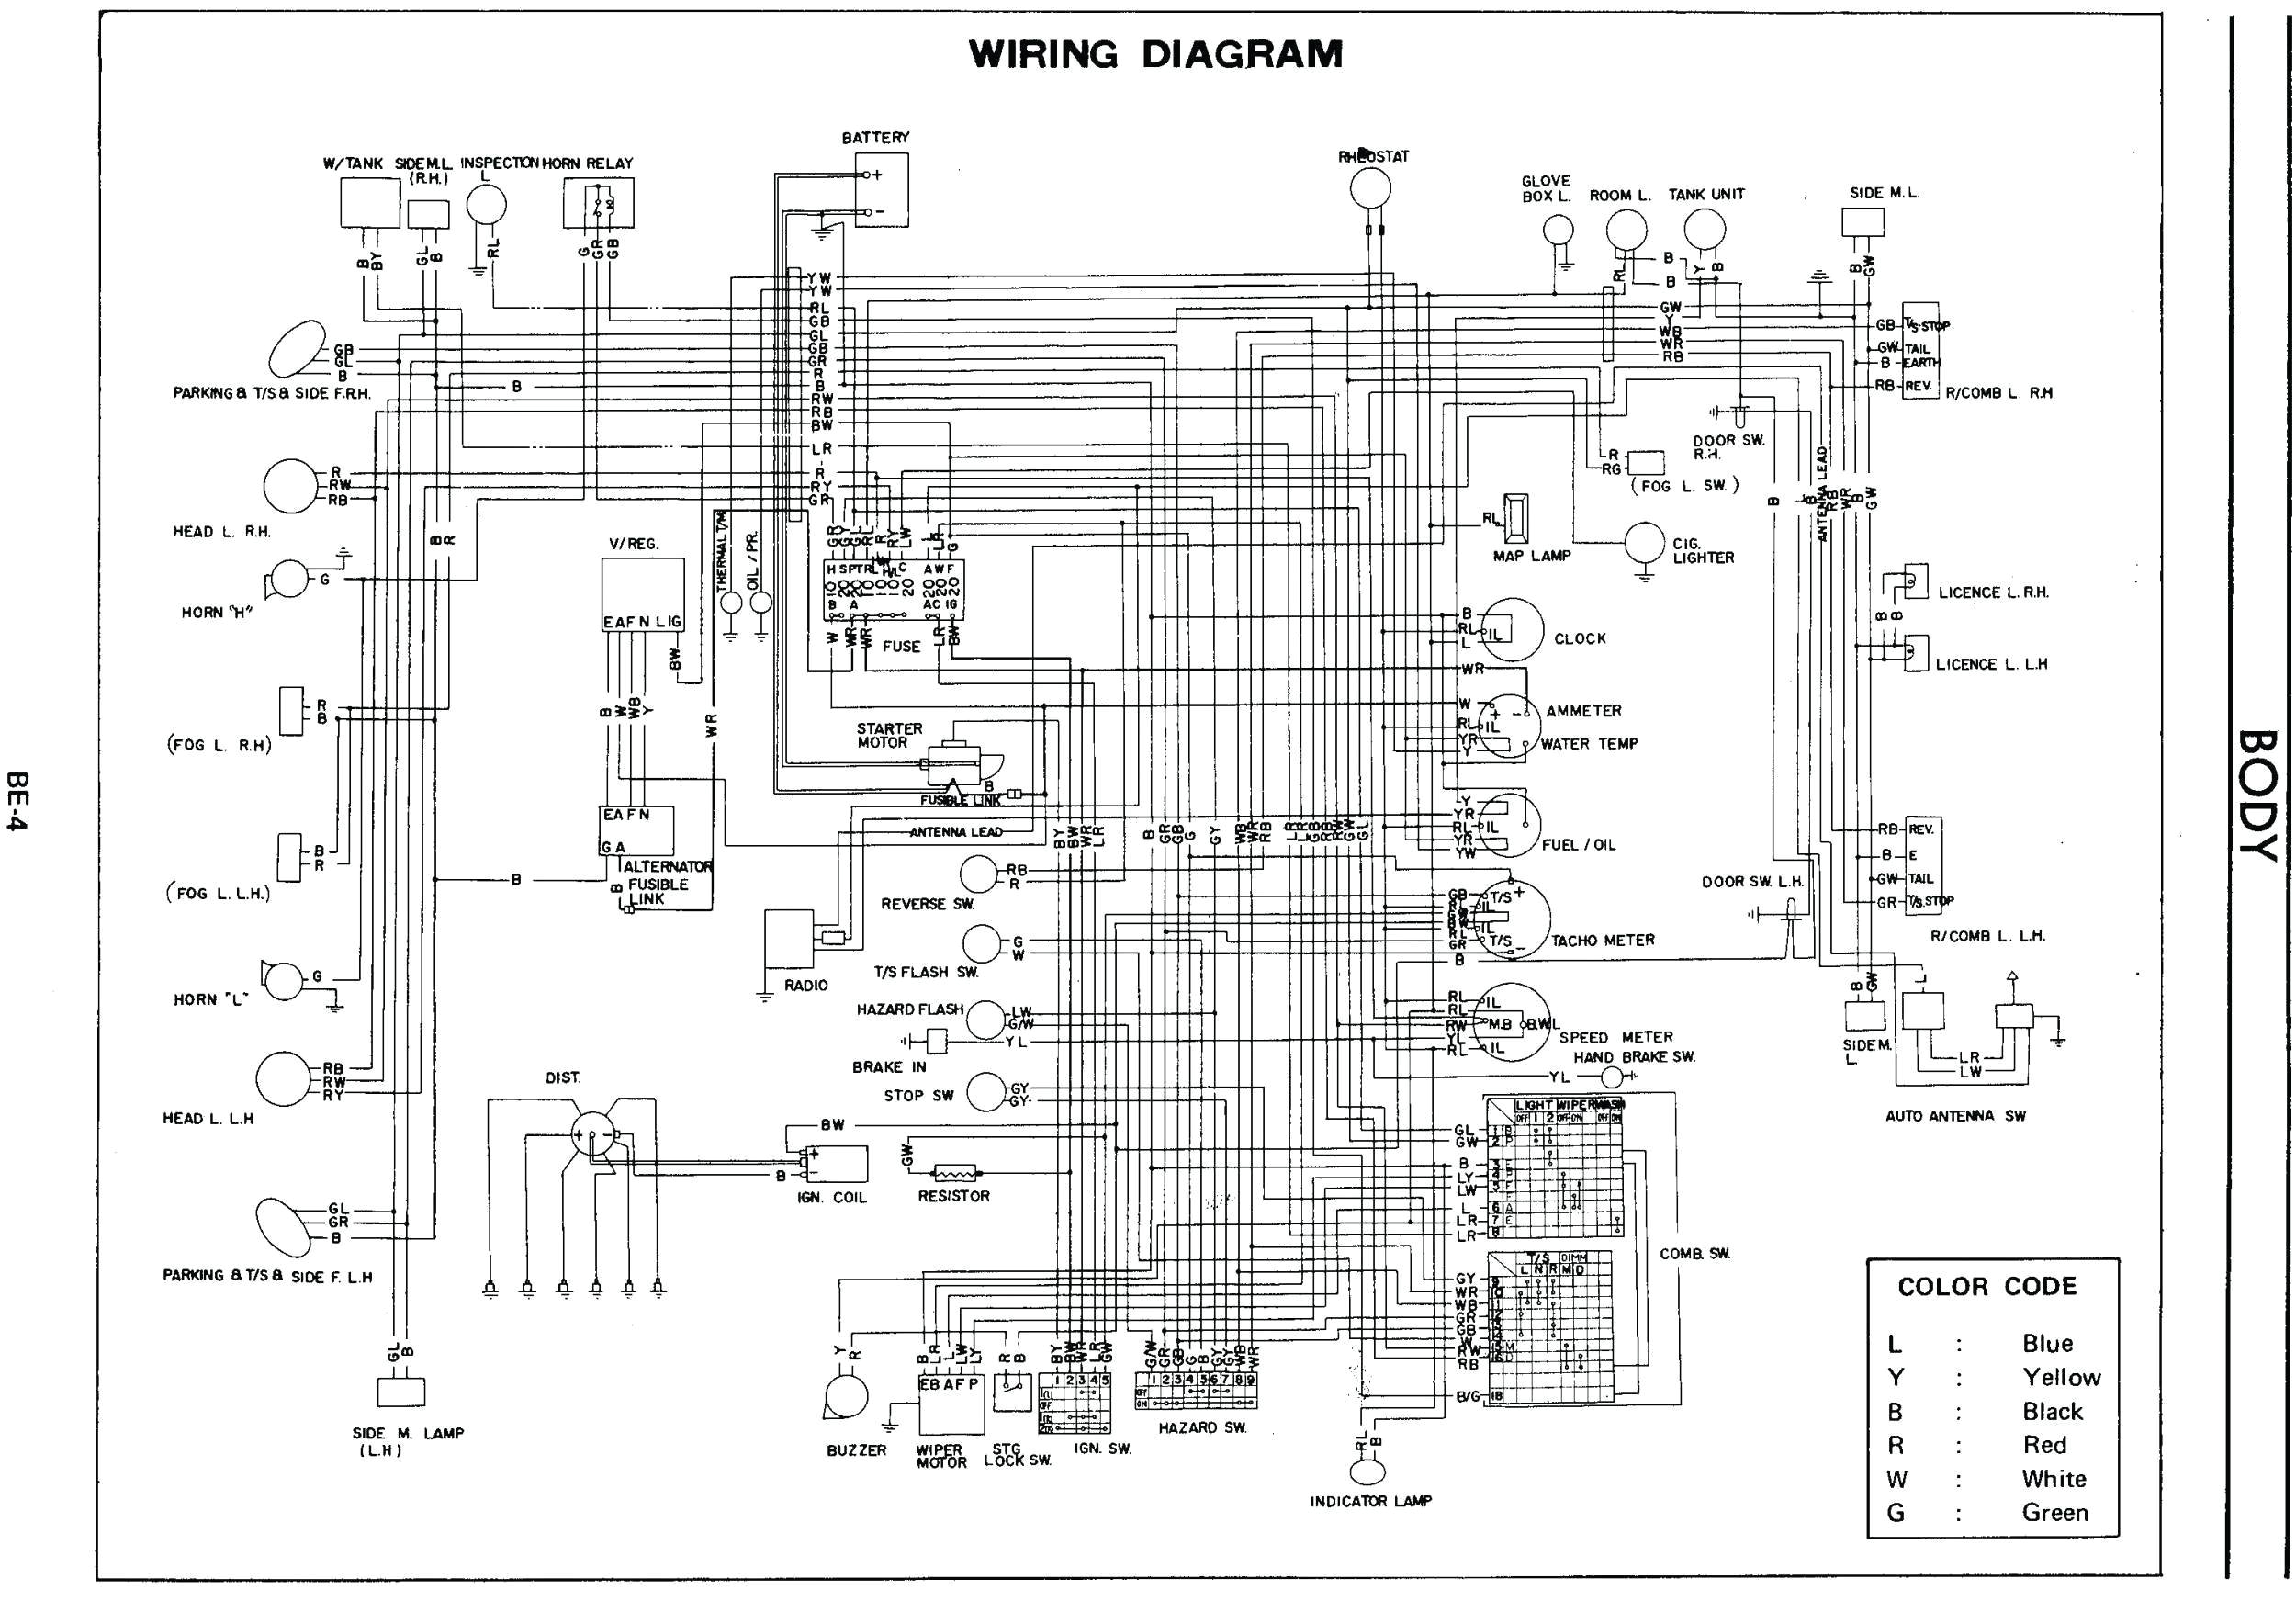 cooper lighting wiring diagrams wiring diagrams terms cooper lighting wiring diagrams